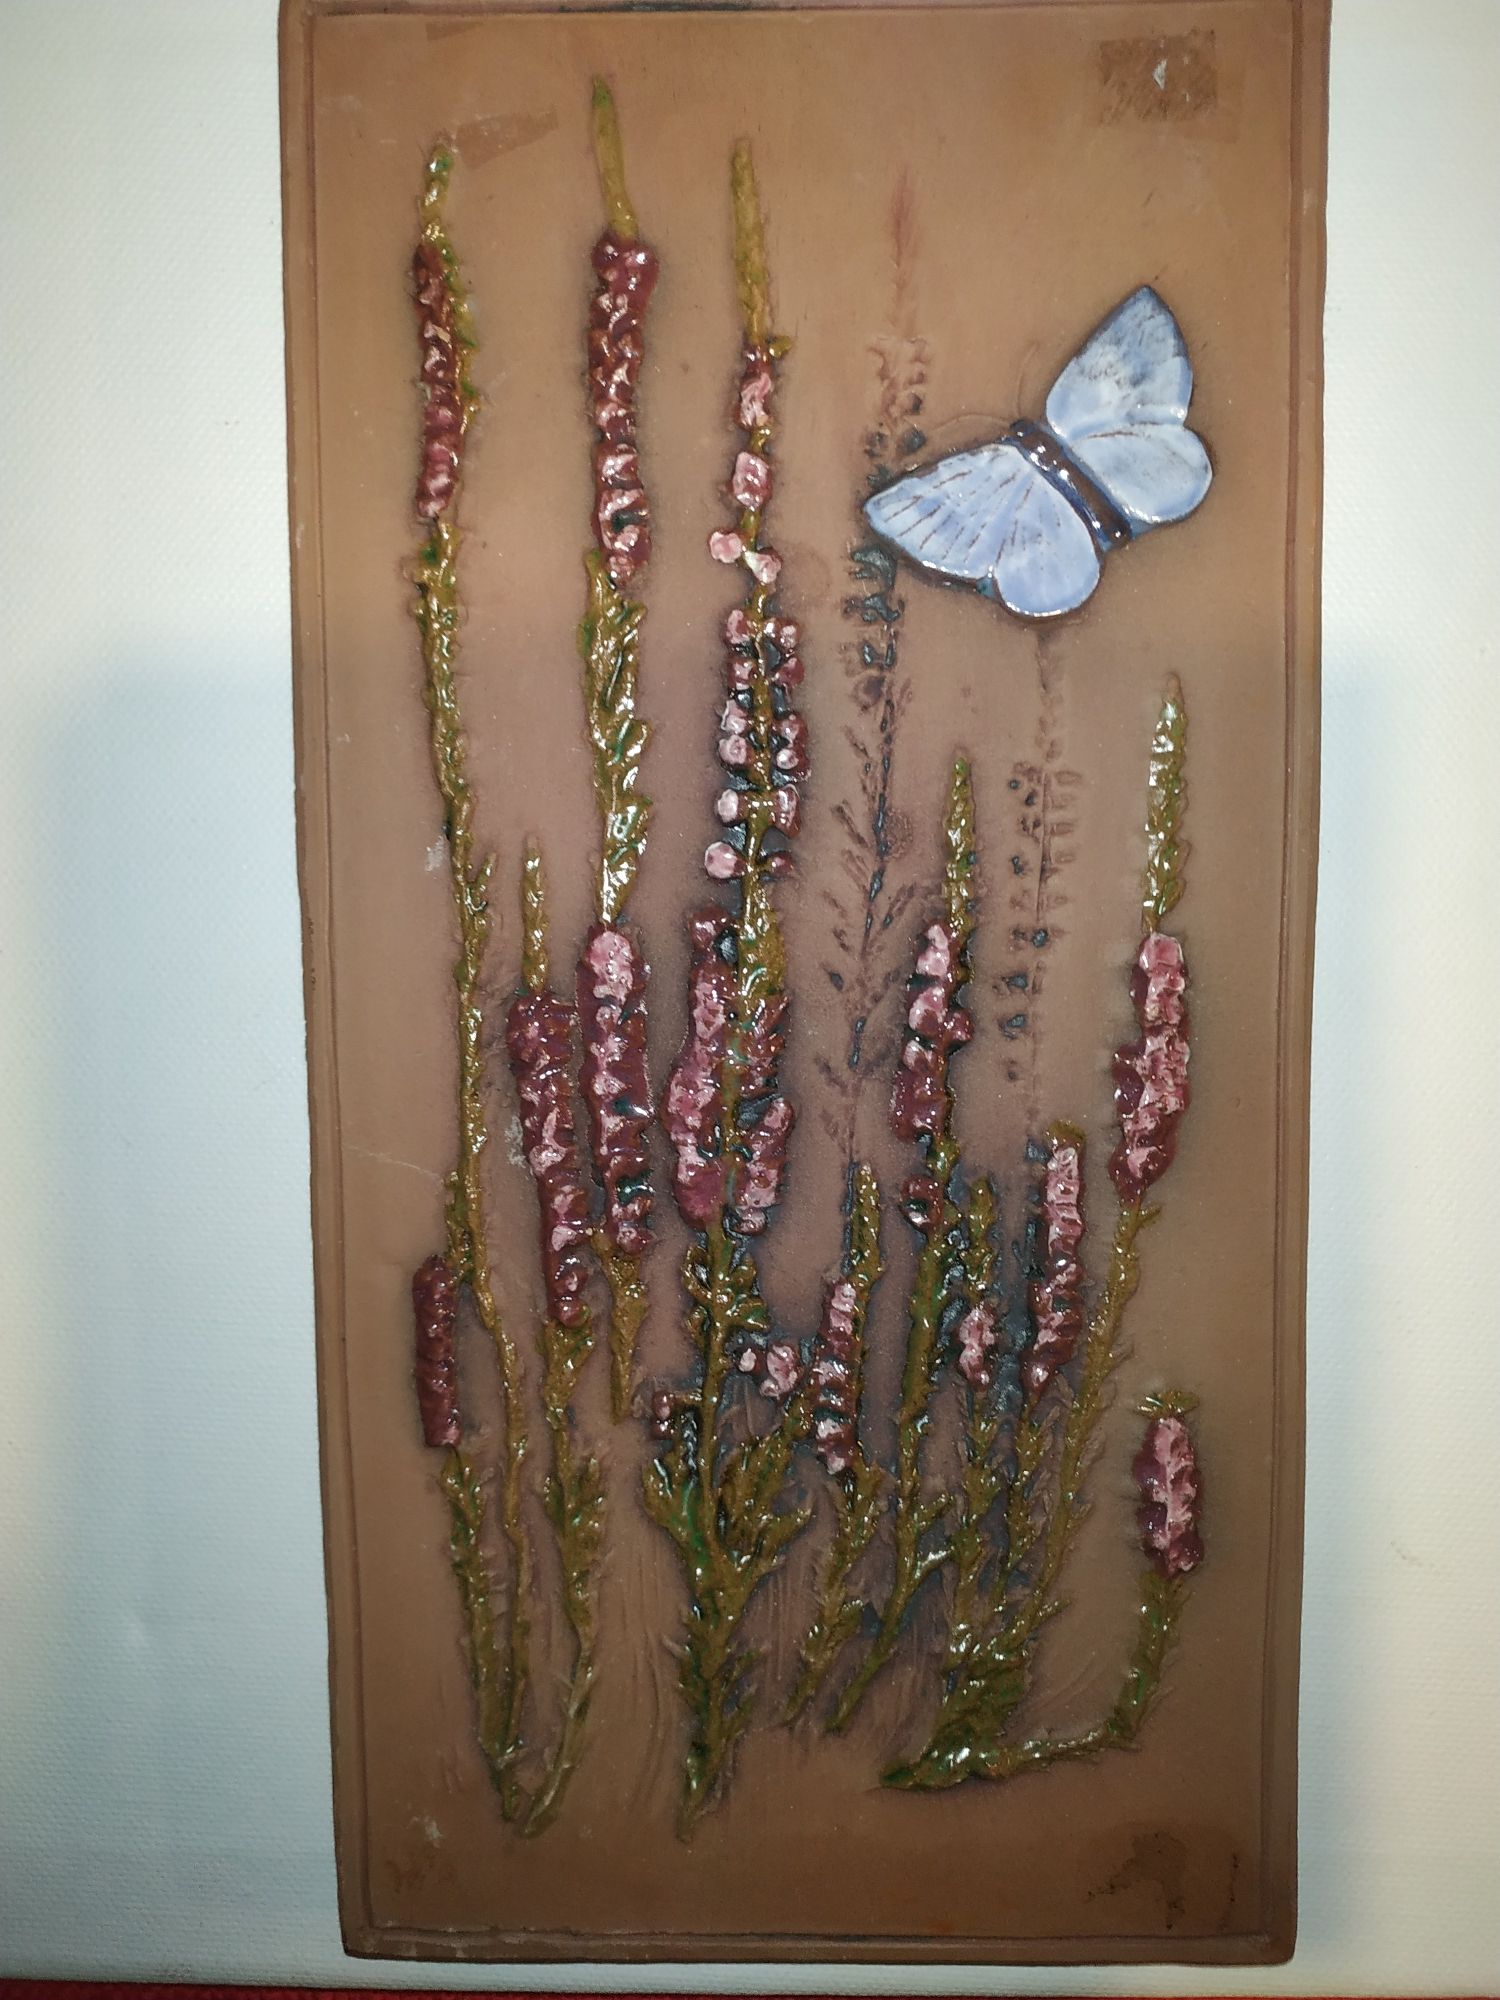 Jie Gantofa Sweden obrazek gliniany motywy roślinne z motylem śliczny